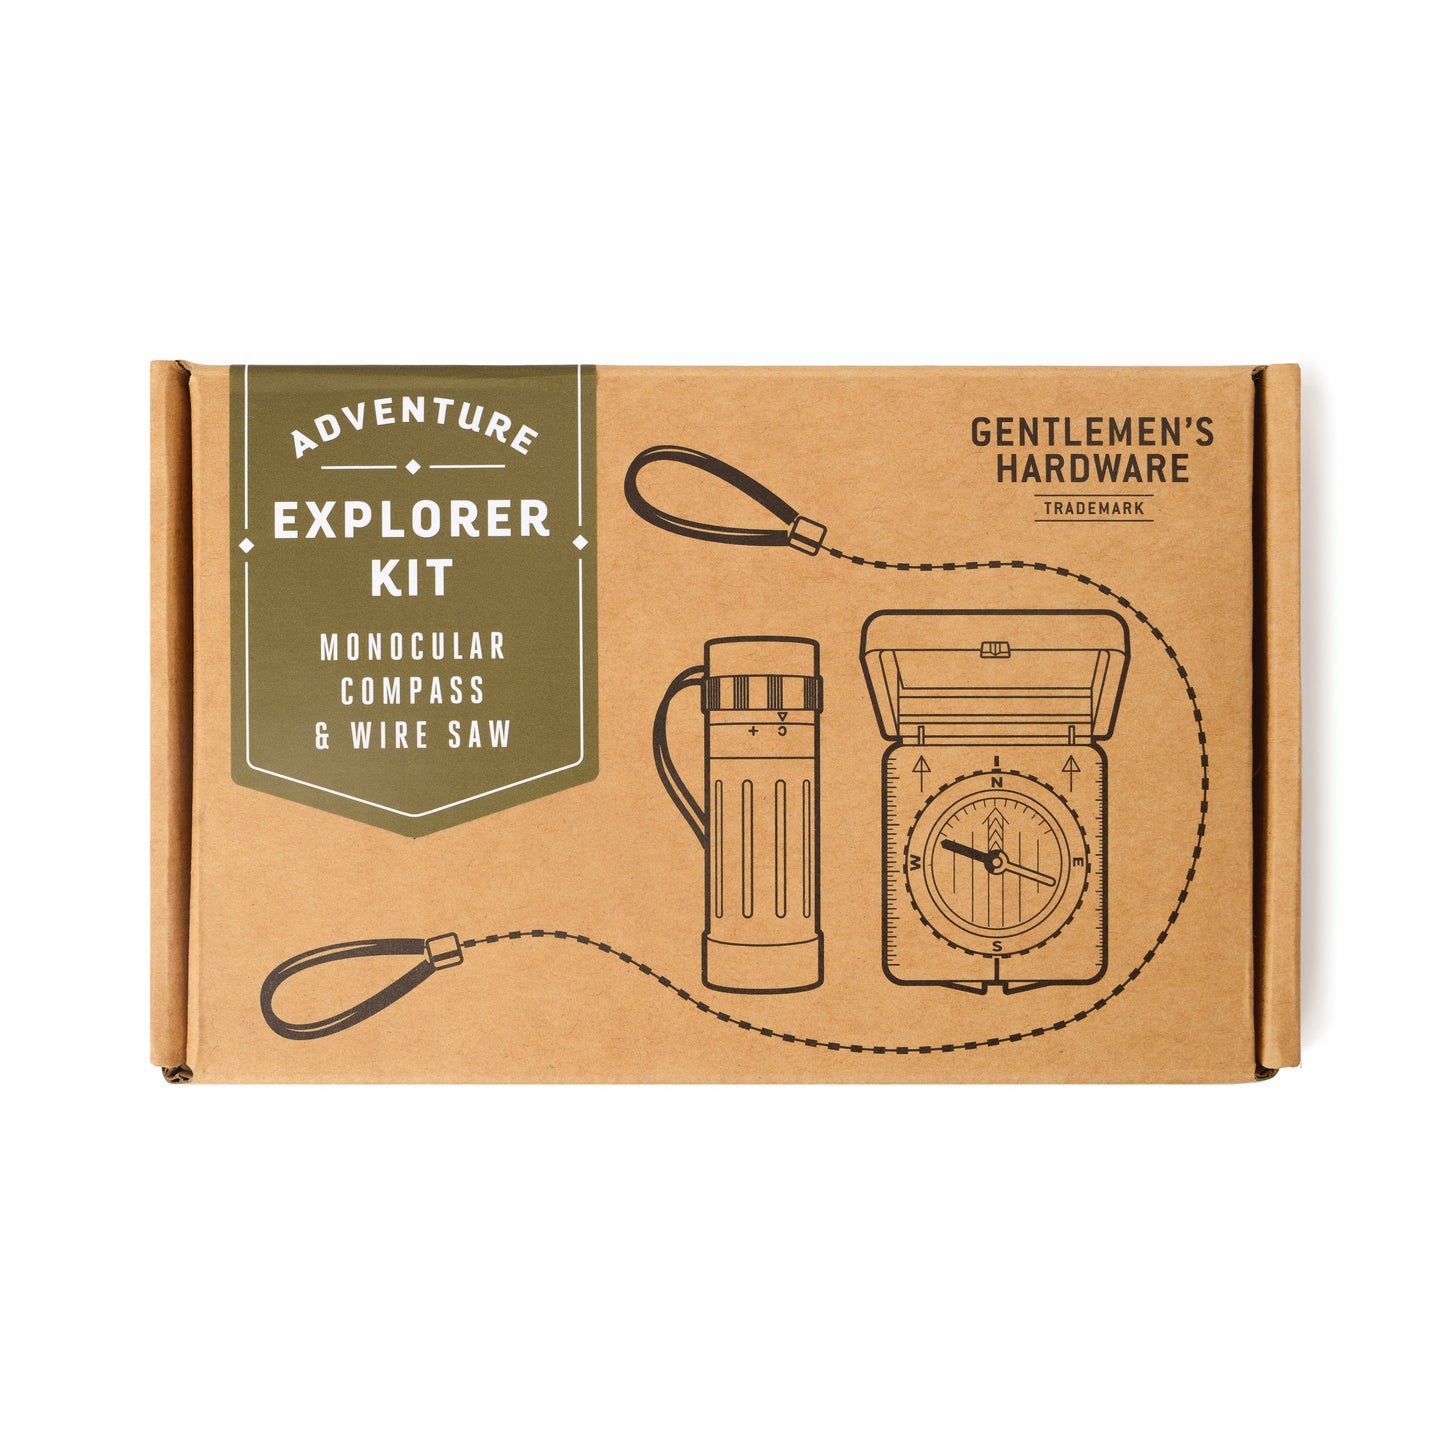 Explorer Kit